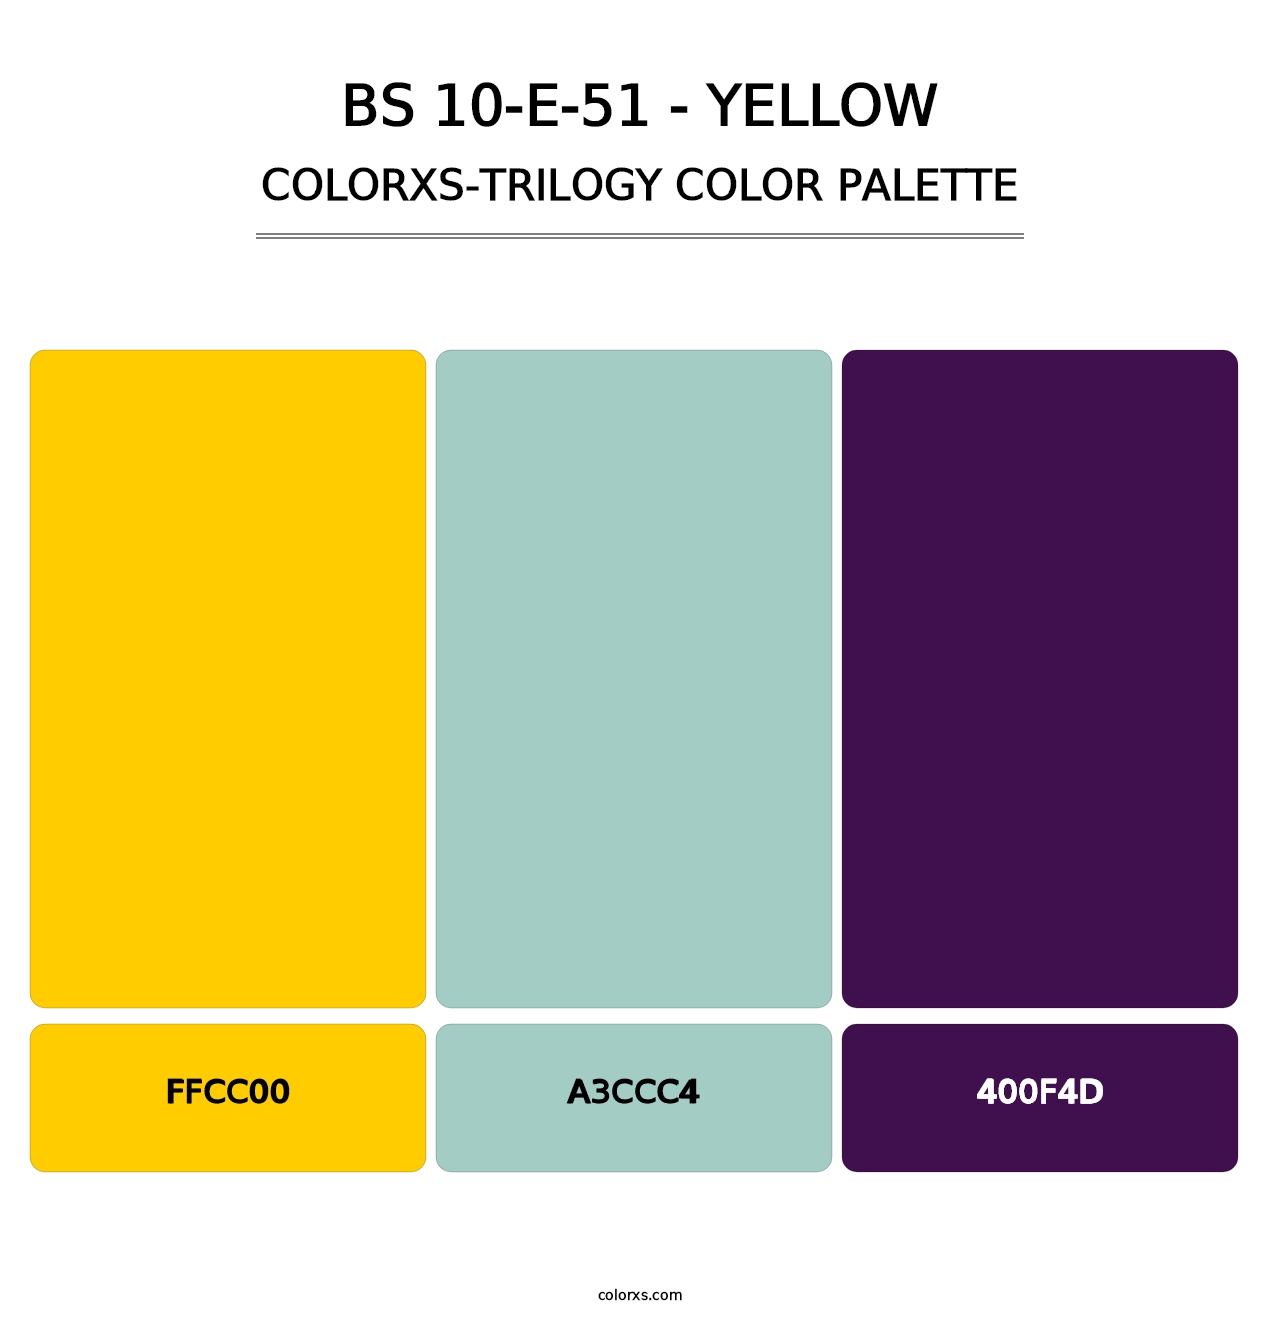 BS 10-E-51 - Yellow - Colorxs Trilogy Palette